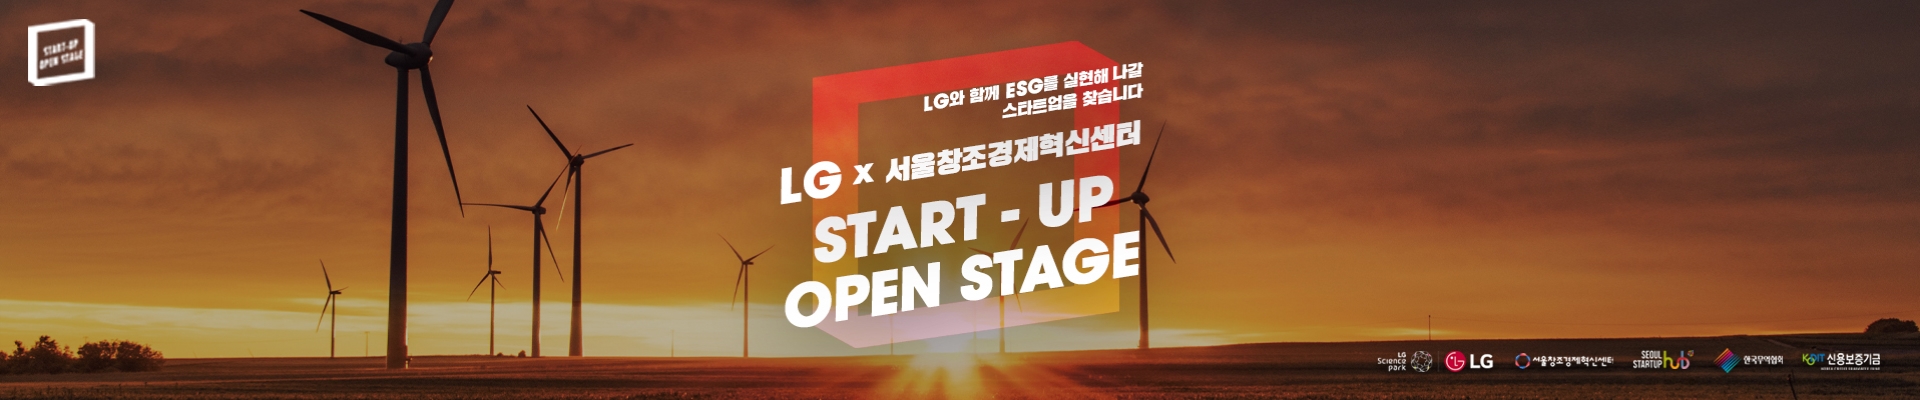 LG x 서울창조경제혁신센터 Startup open stage